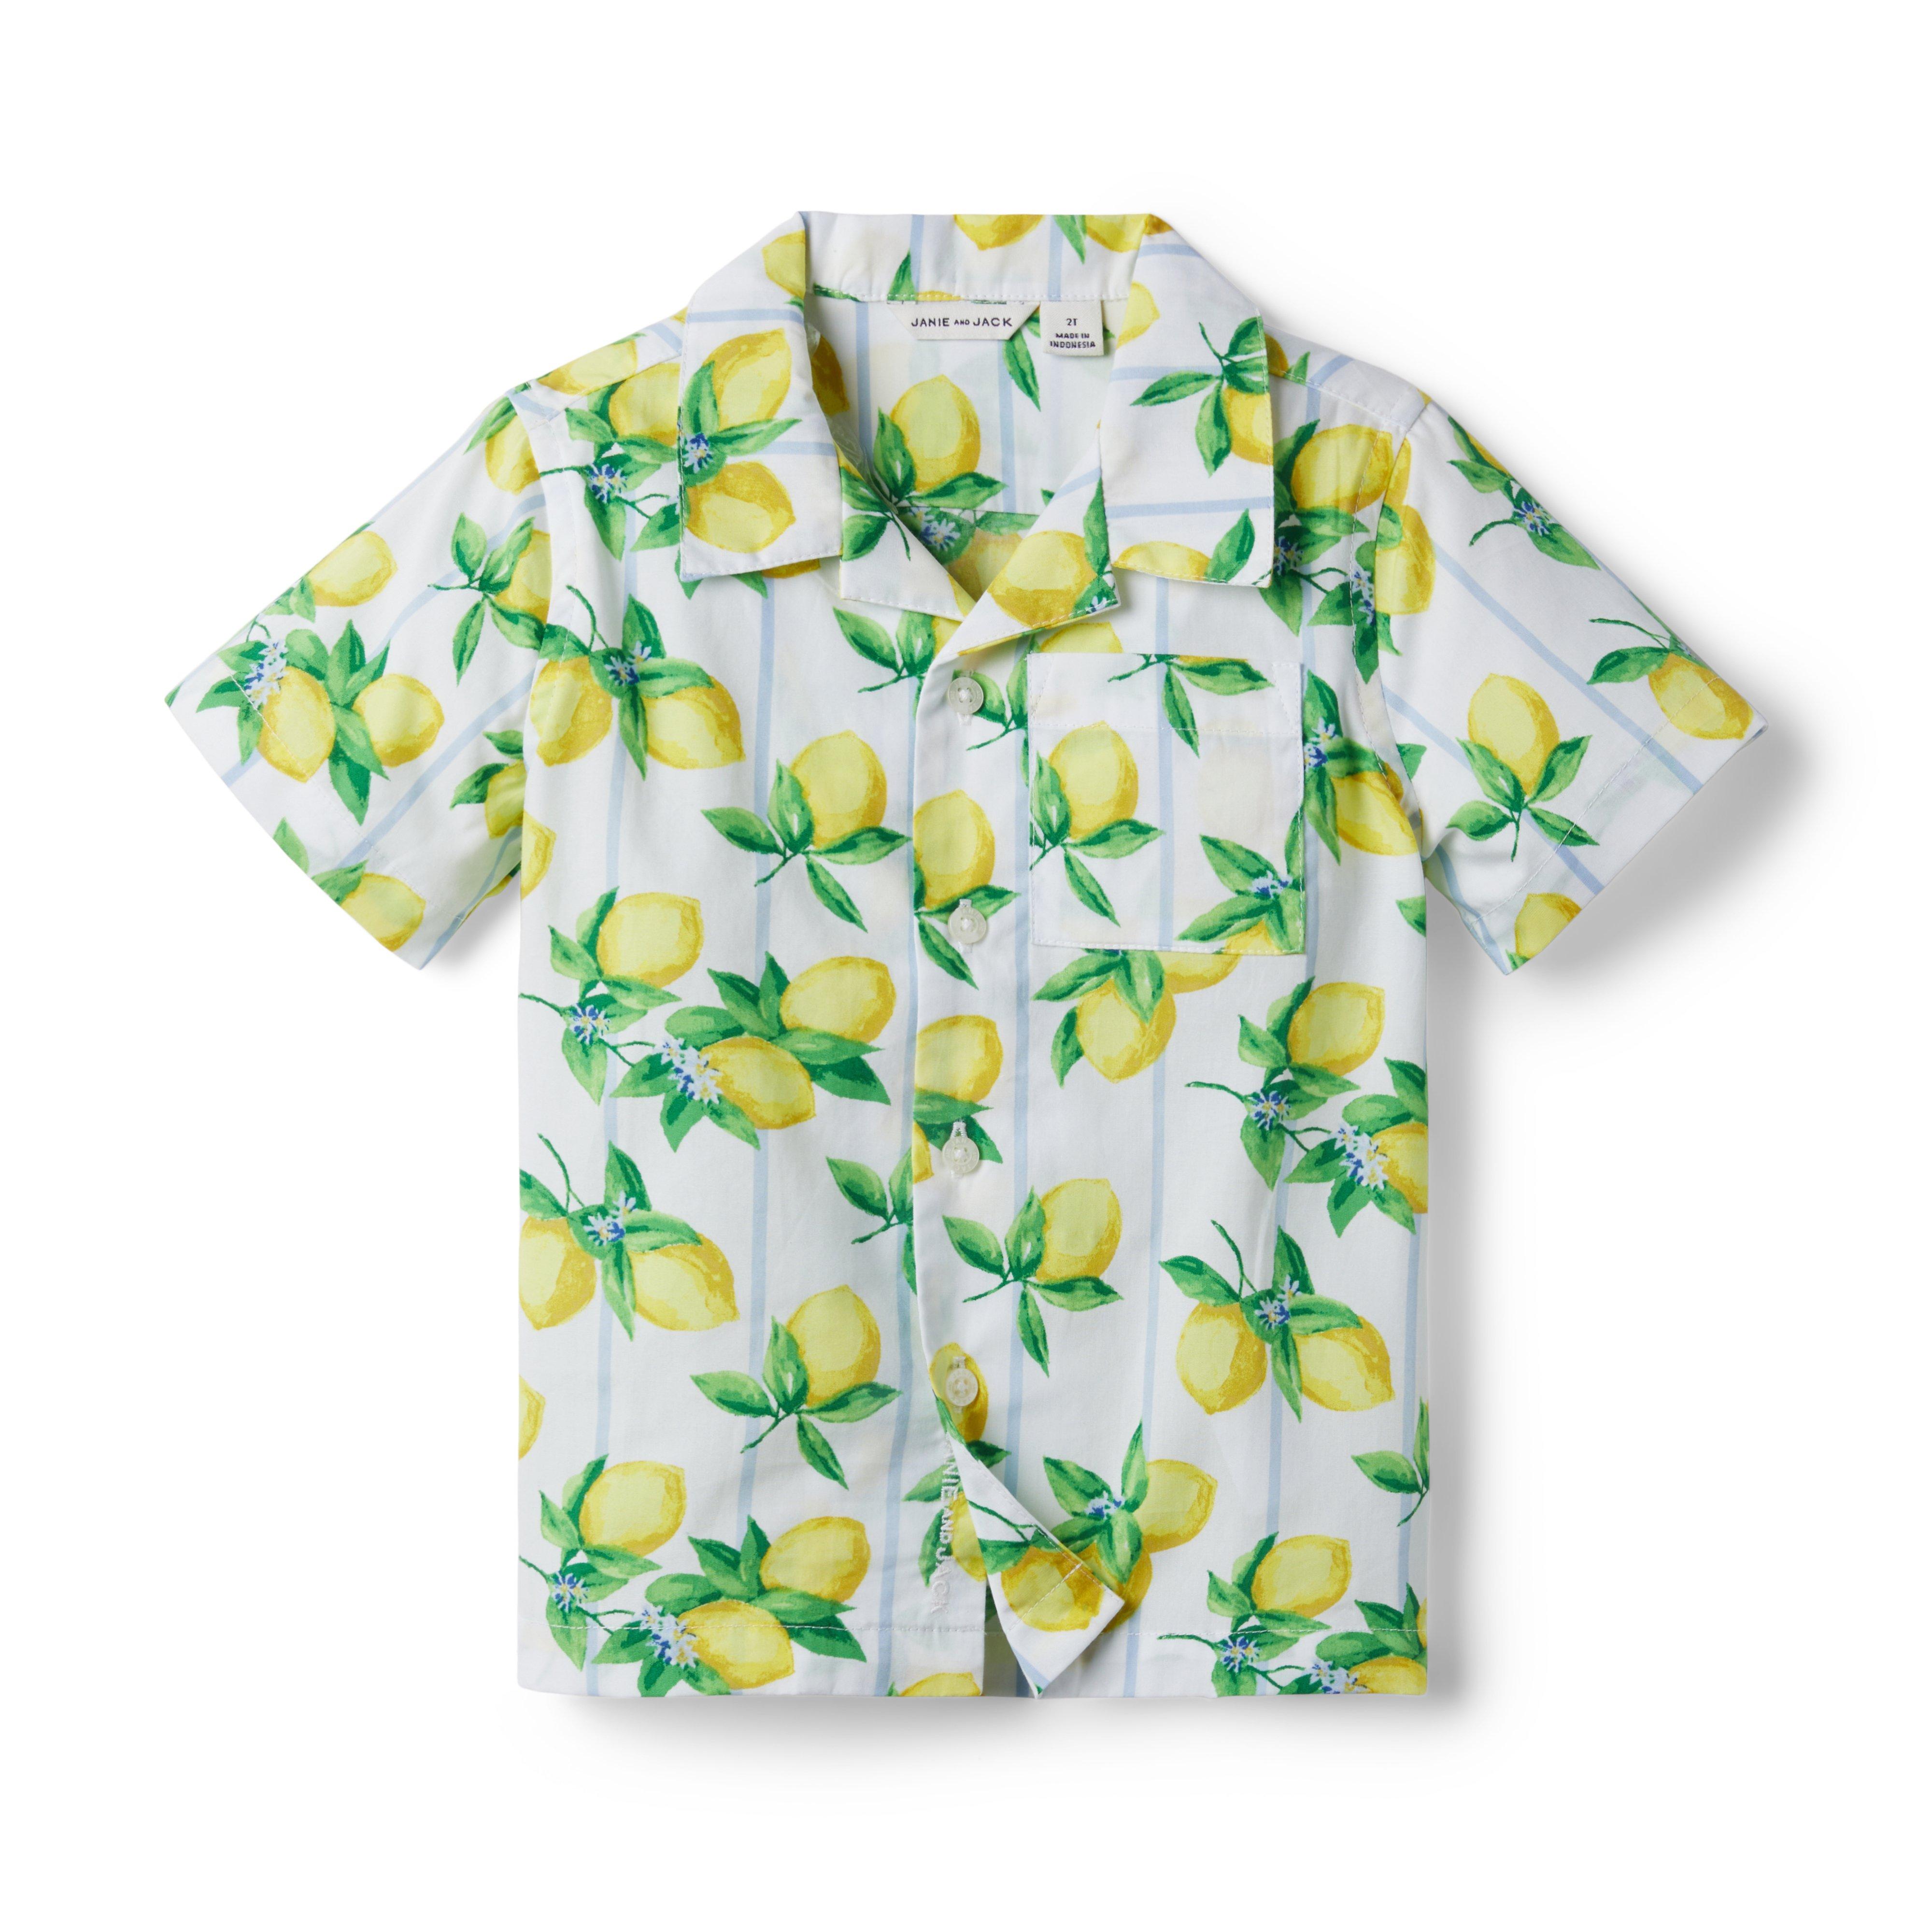 The Lemon Stripe Cabana Shirt